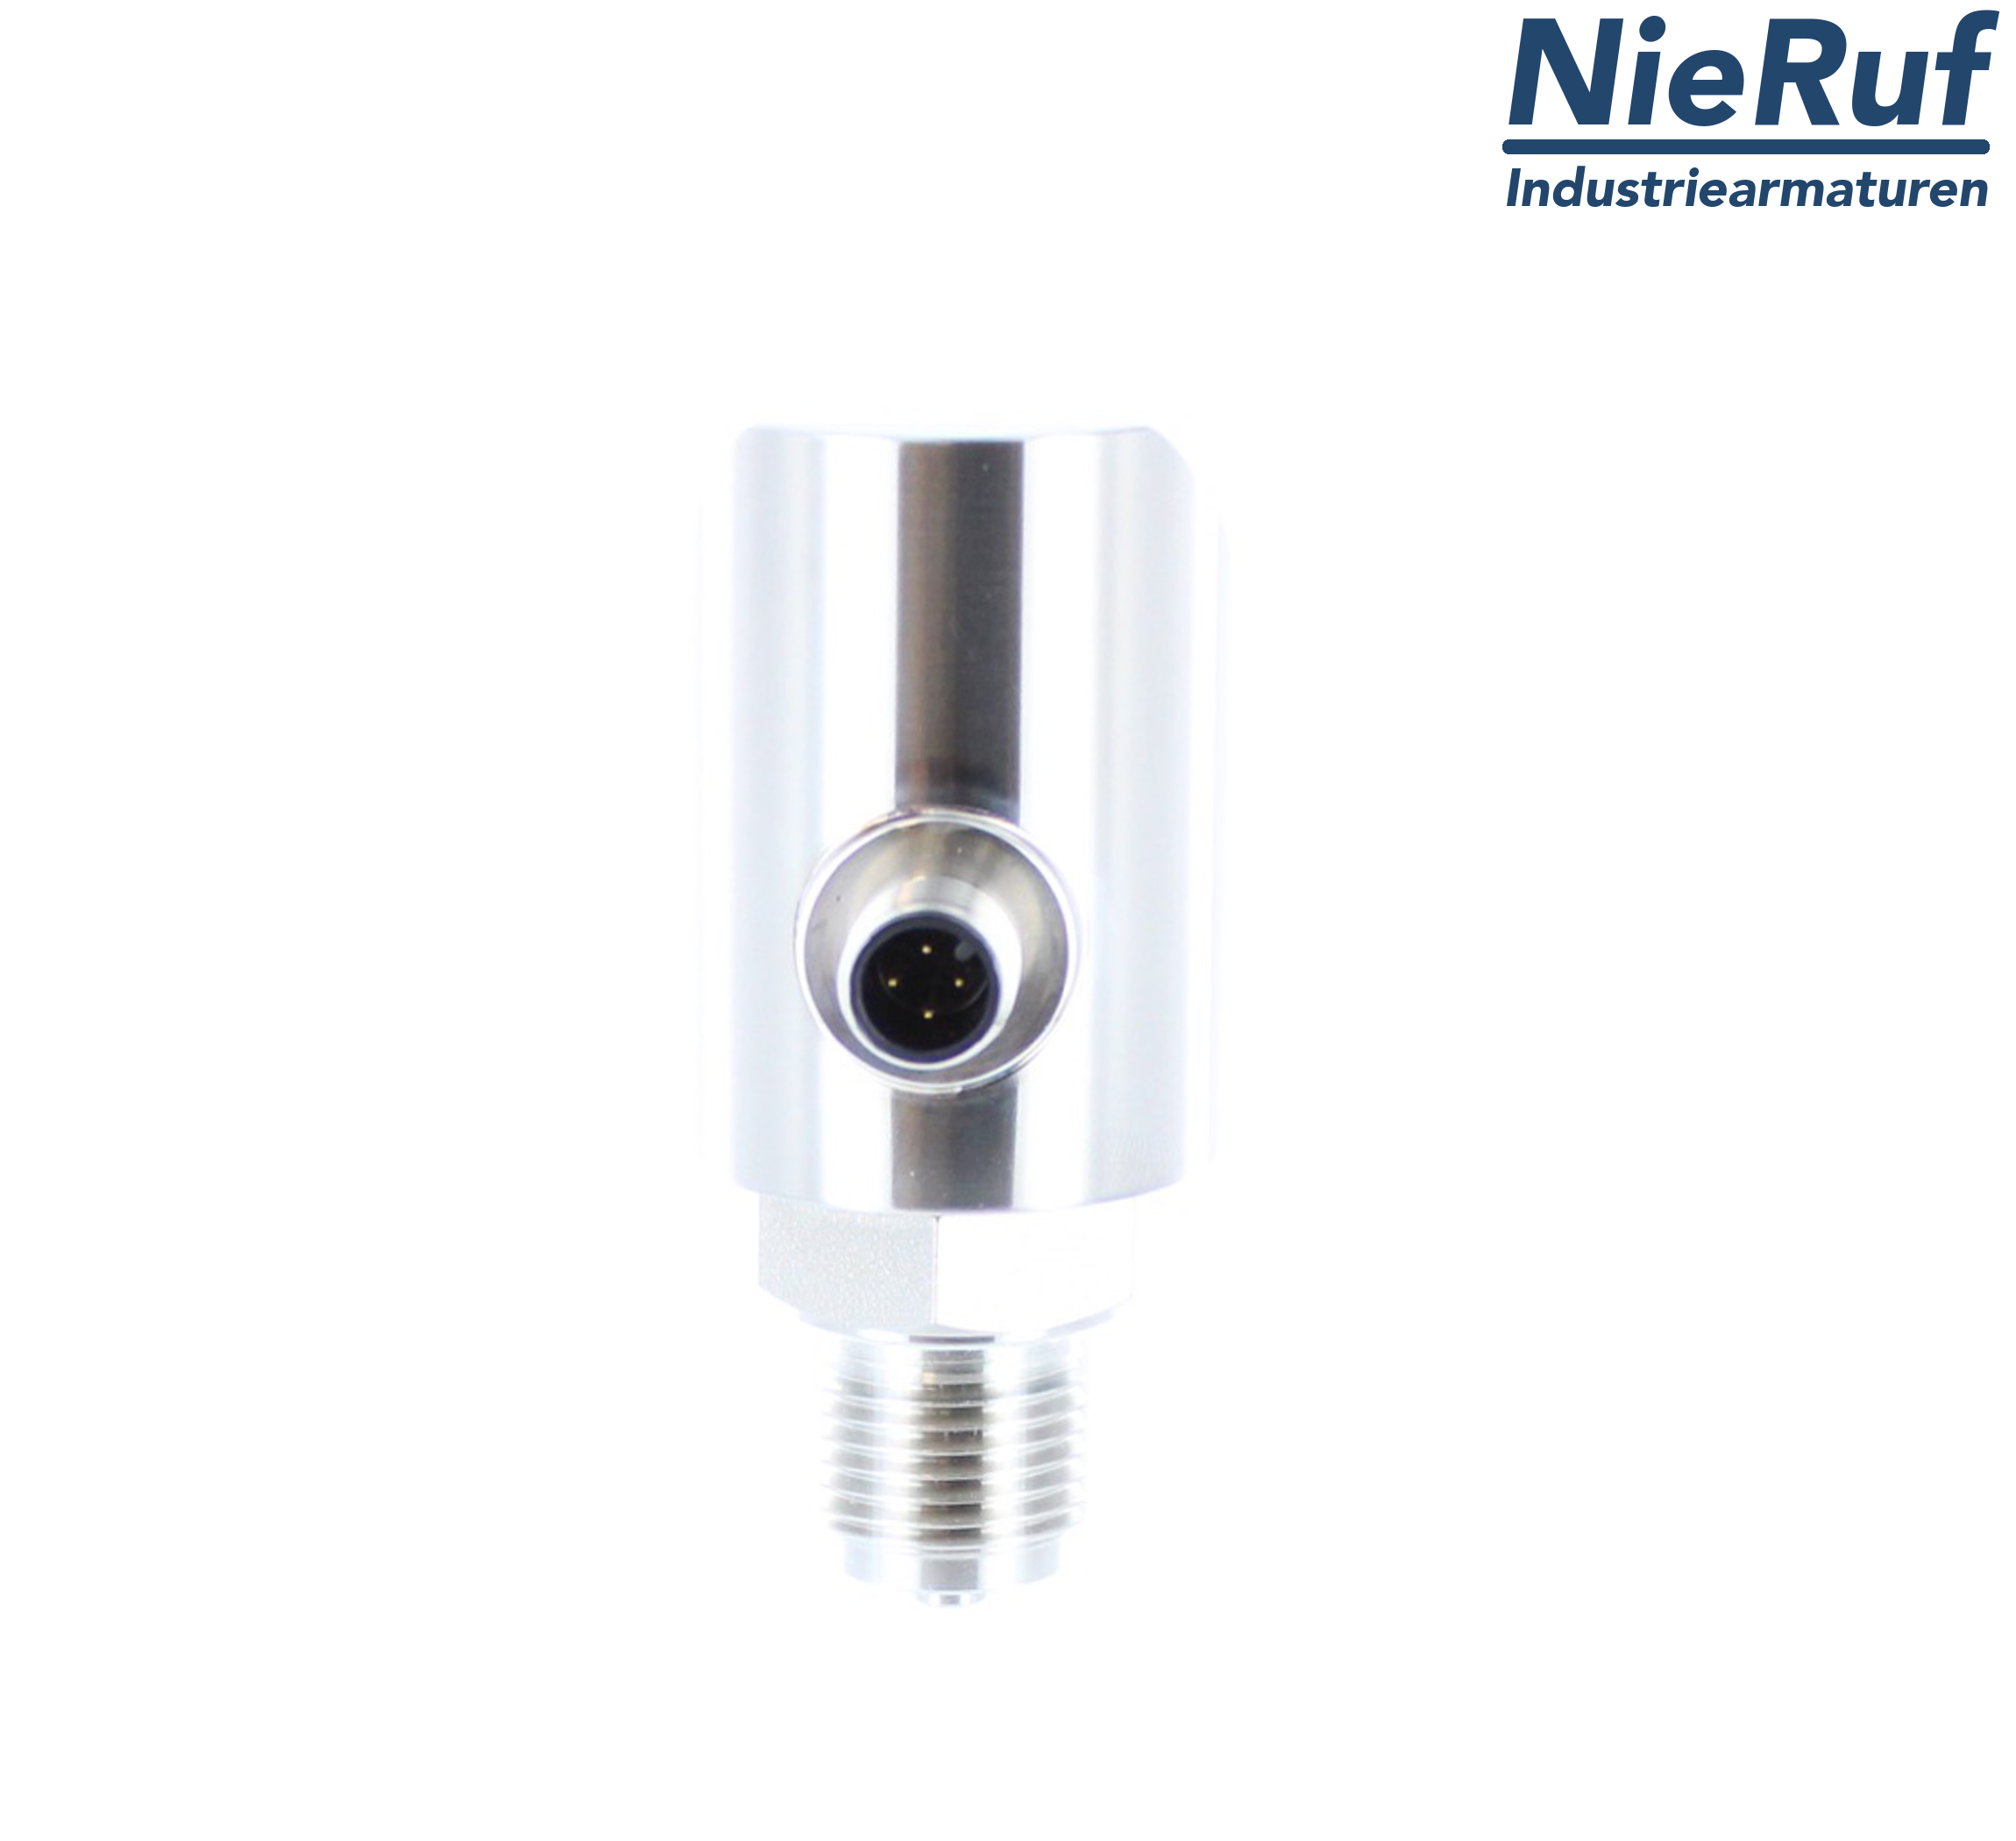 digital pressure sensor G 1/4" B 4-wire: 1xPNP, 1x4 - 20mA, Desina FPM 0,0 - 6,0 bar